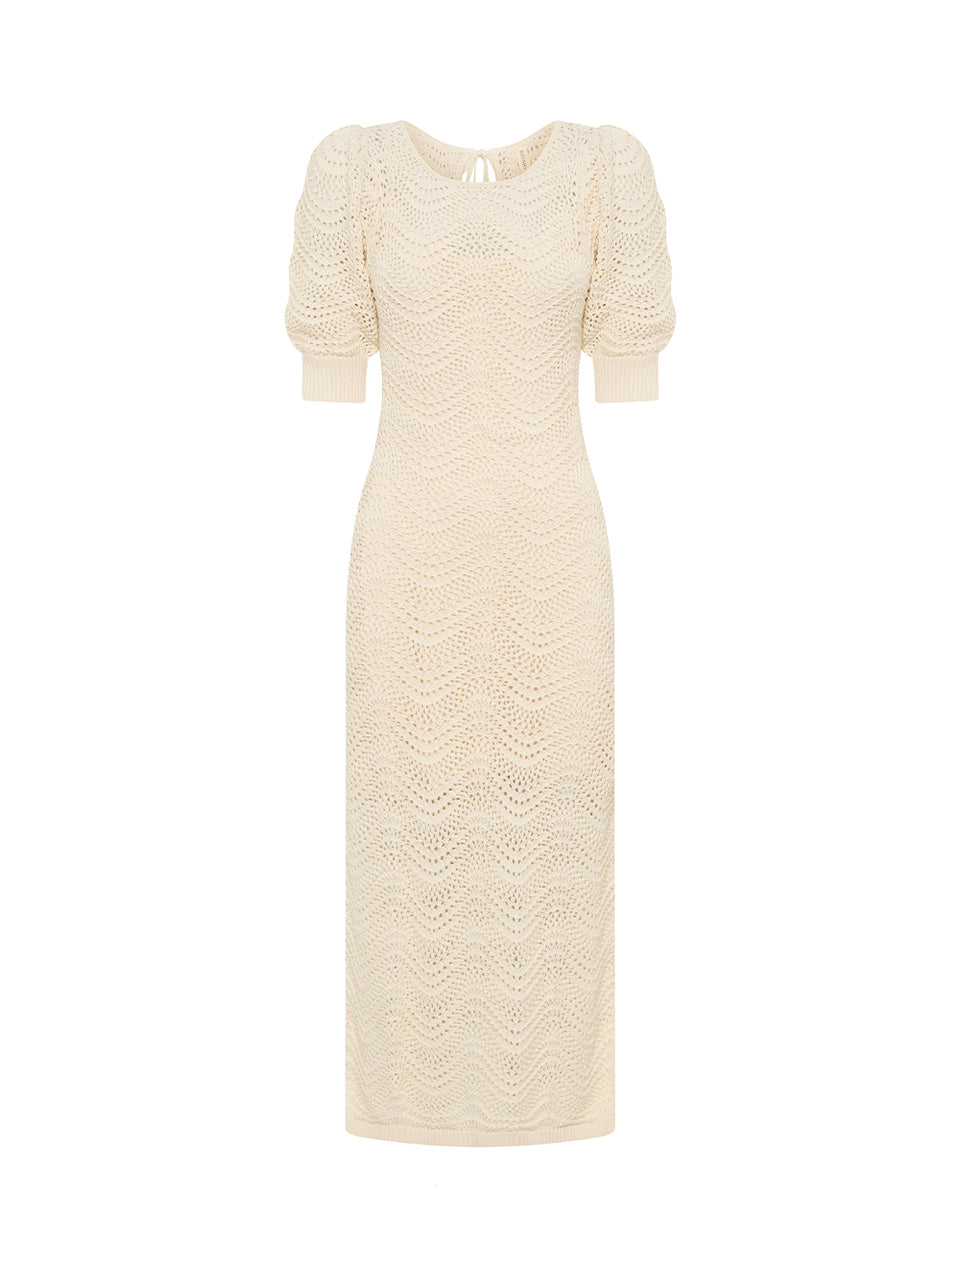 Mariana Knit Dress KIVARI | Cream knit dress